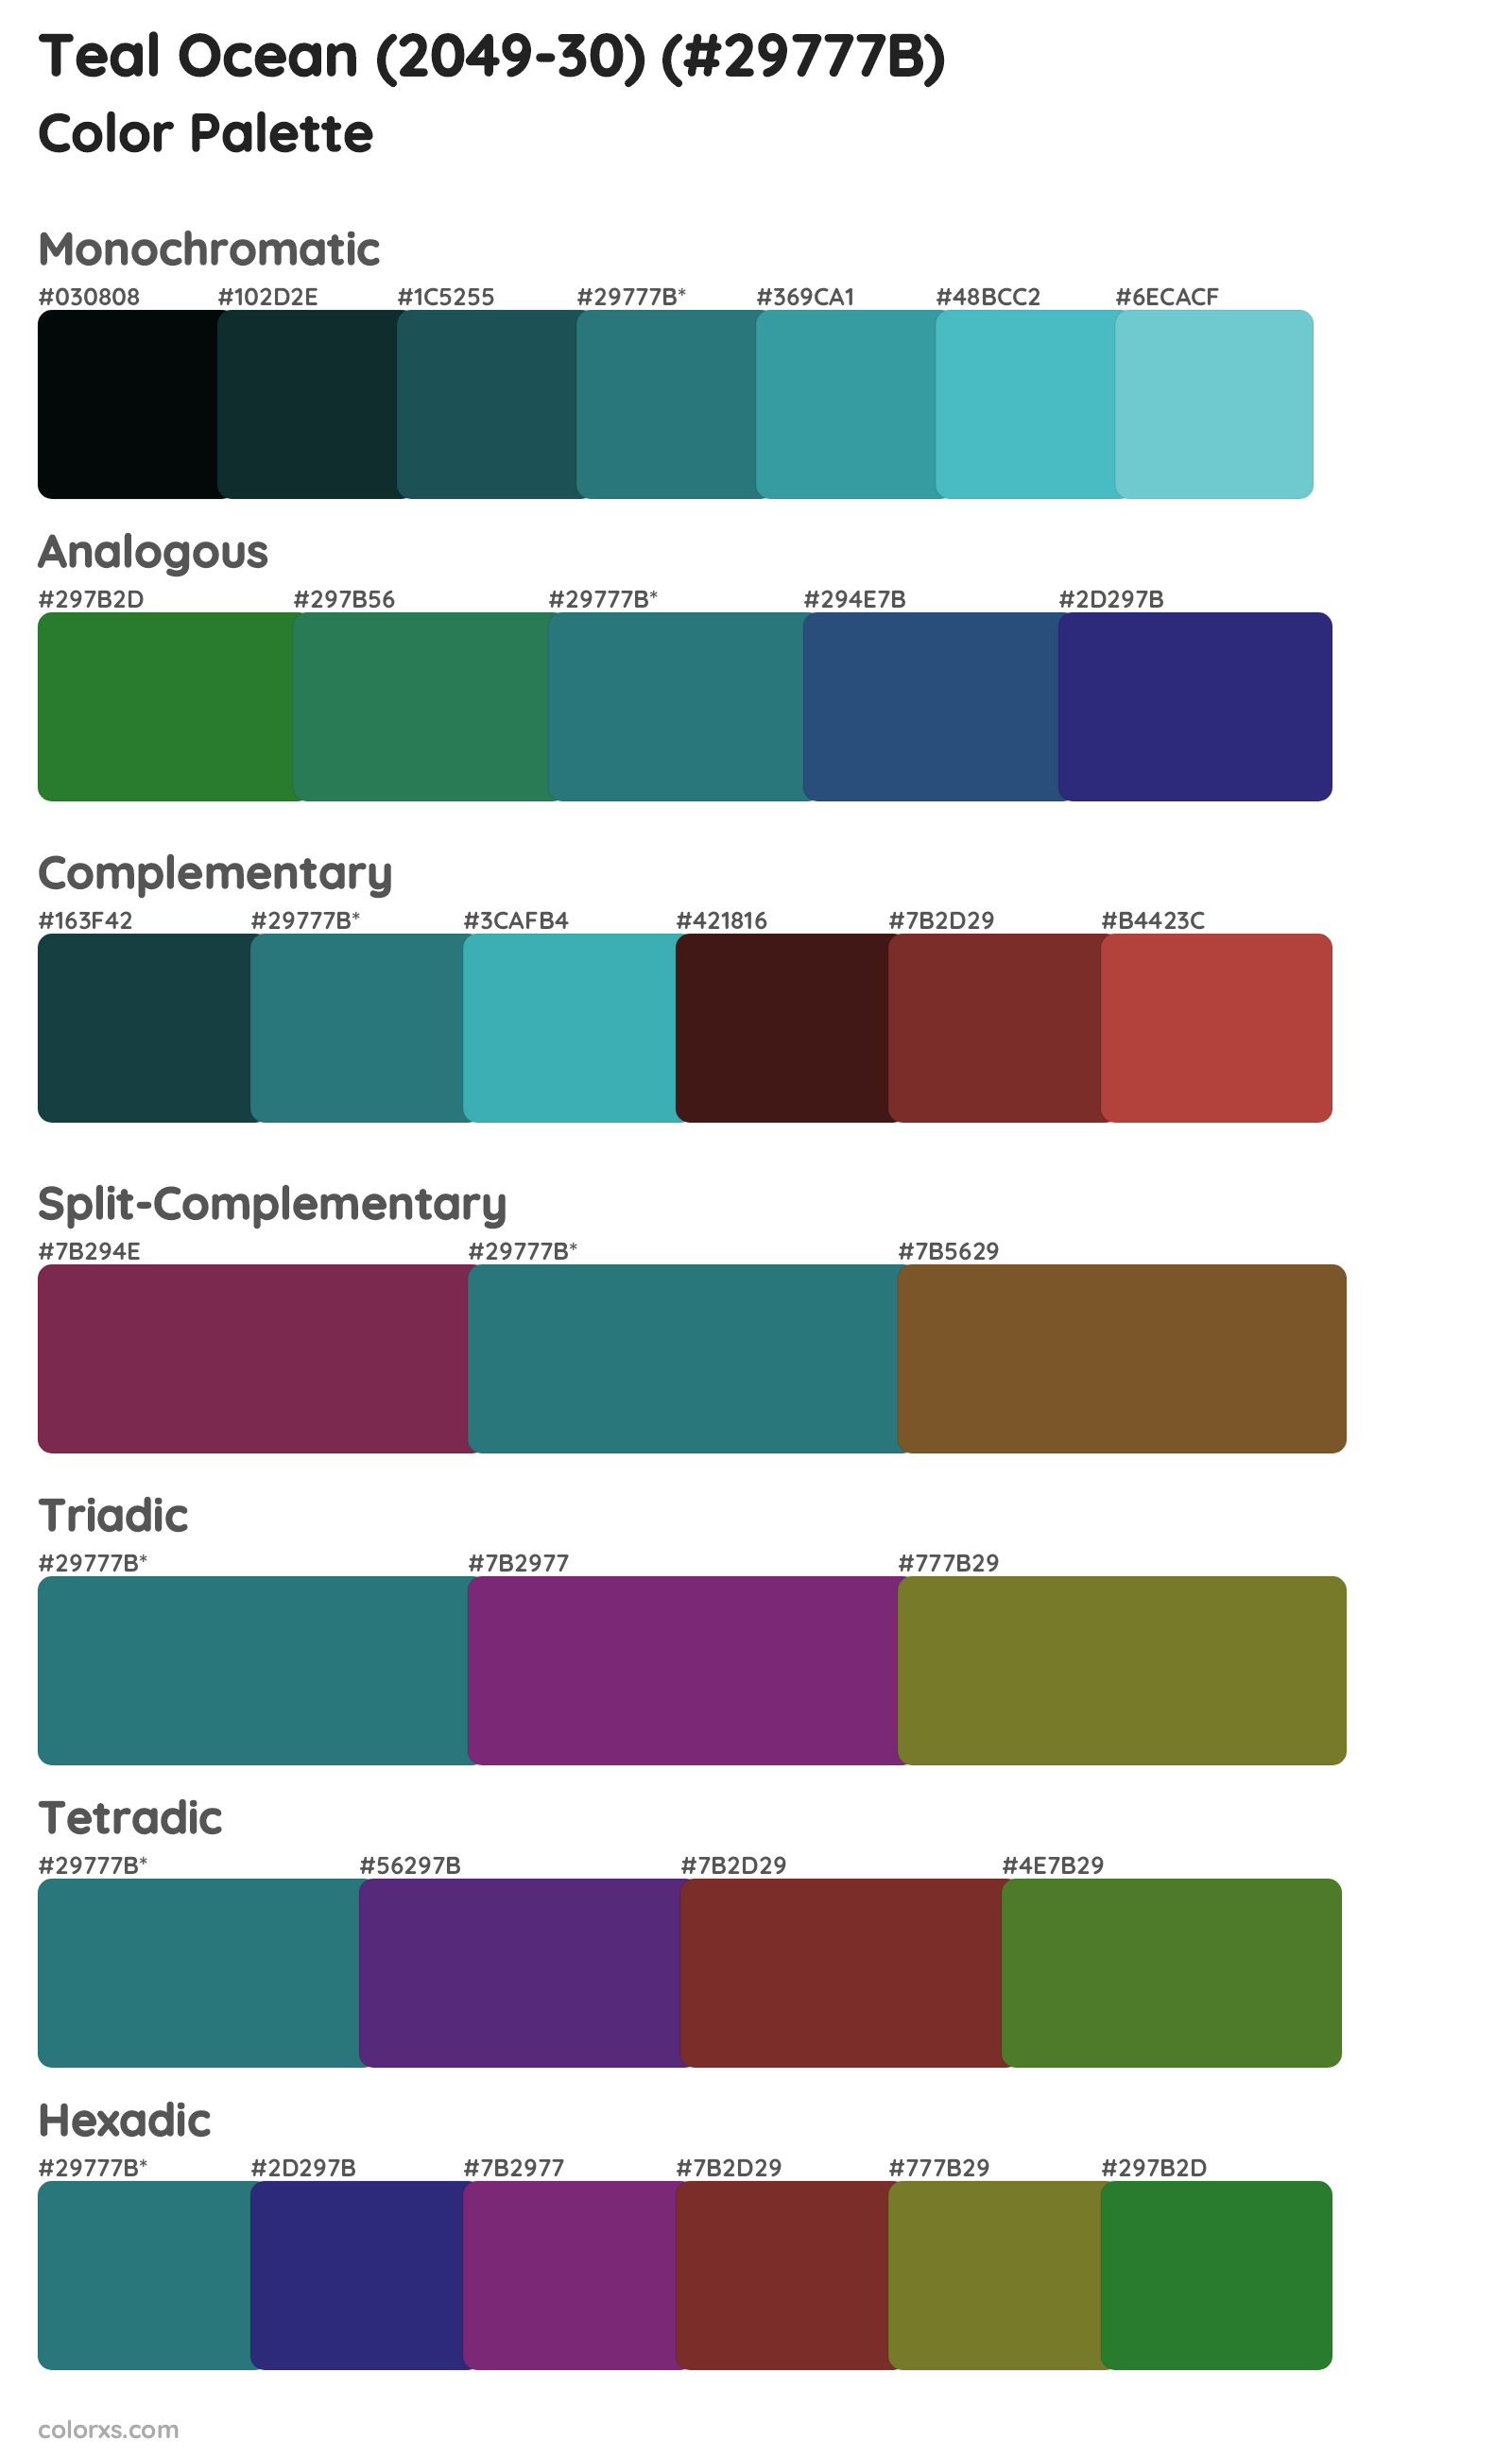 Teal Ocean (2049-30) Color Scheme Palettes